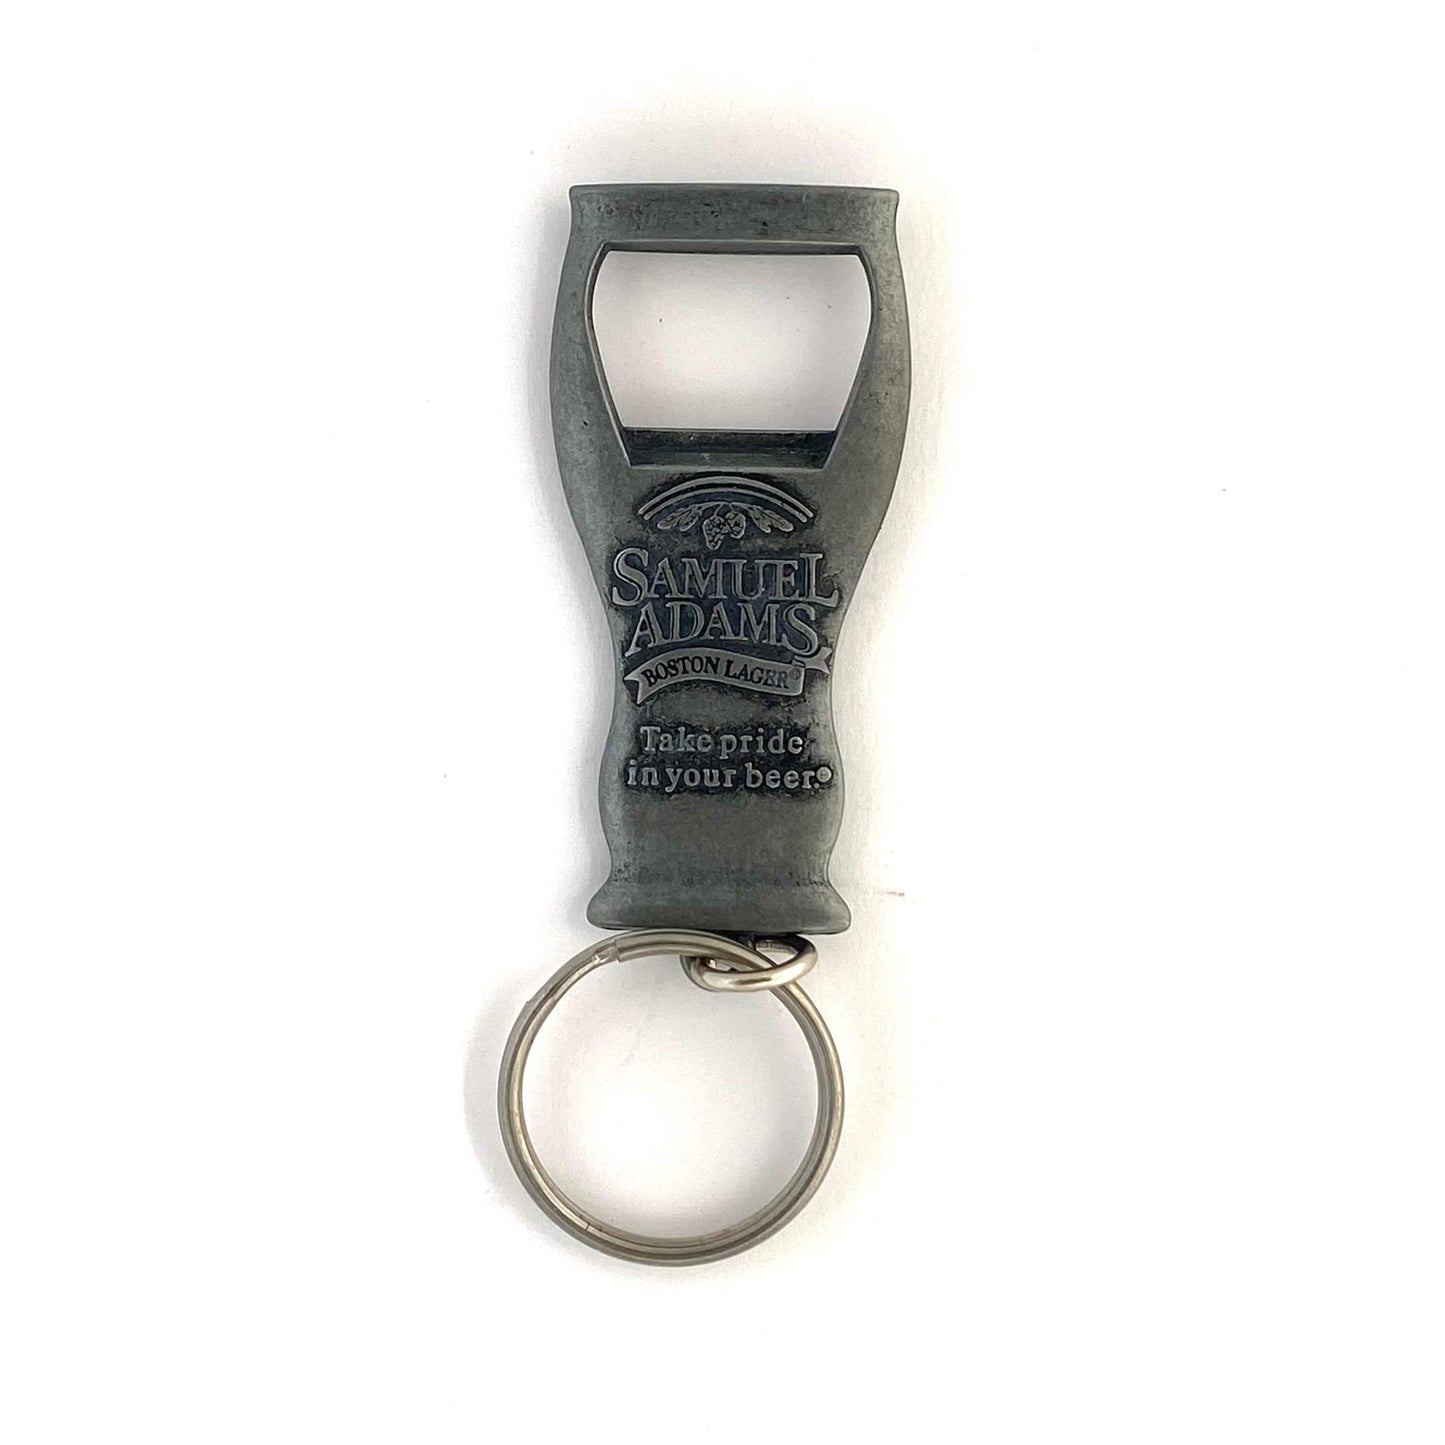 Samuel Adams Bottle Opener Metal Keychain Bottle Opener Key Ring